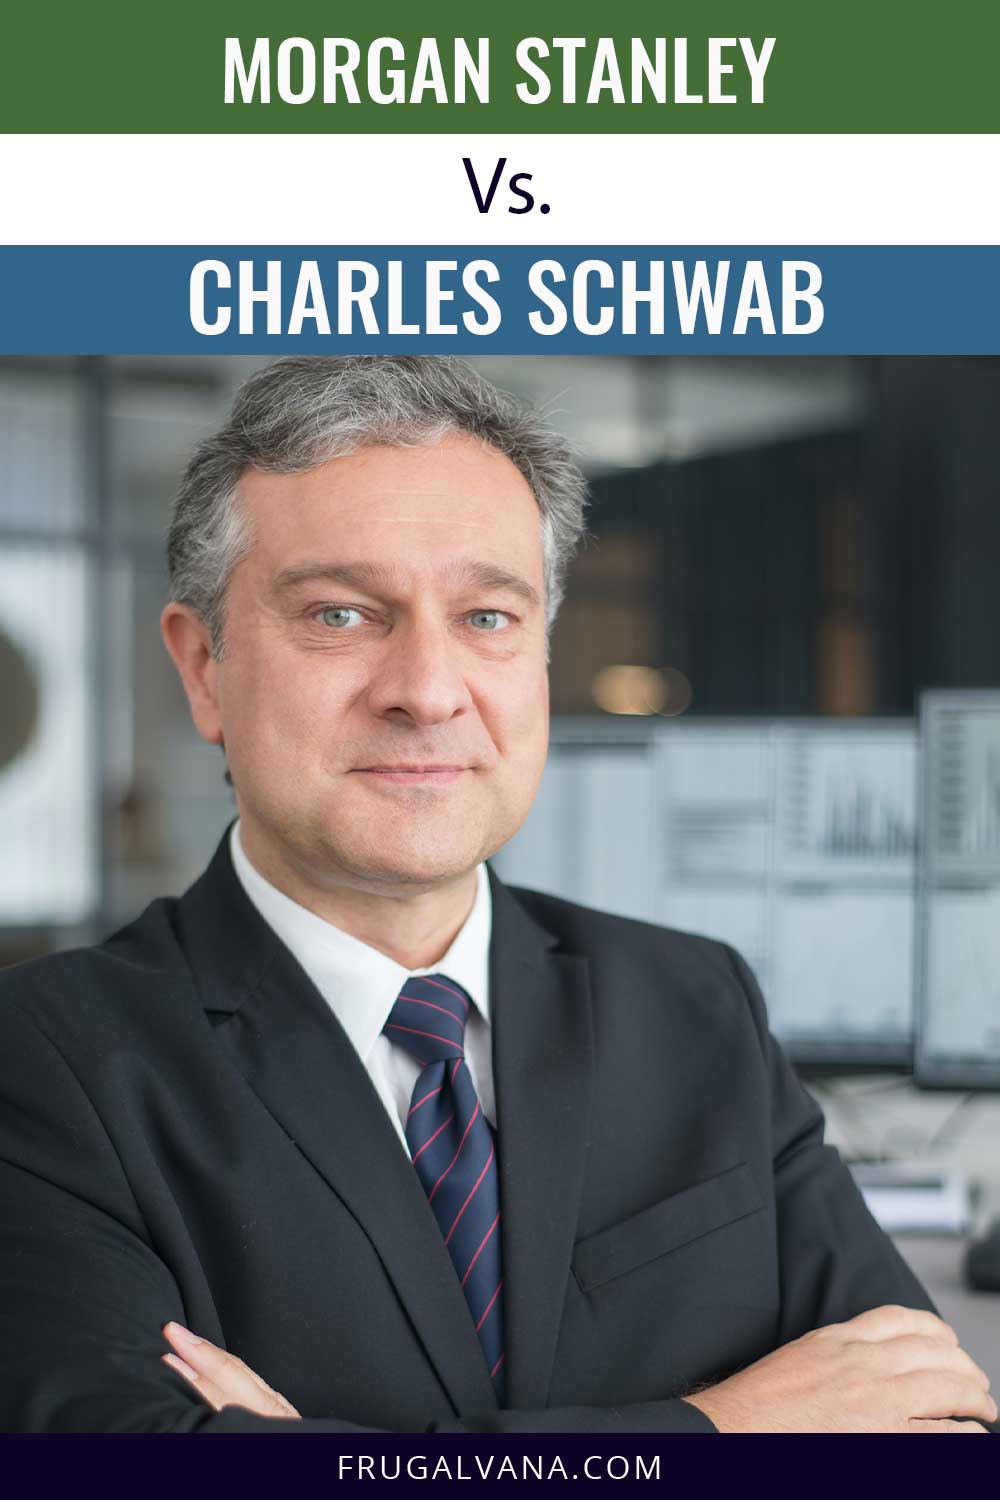 Man with grey hair wearing black suit - Morgan Stanley Vs. Charles Schwab.